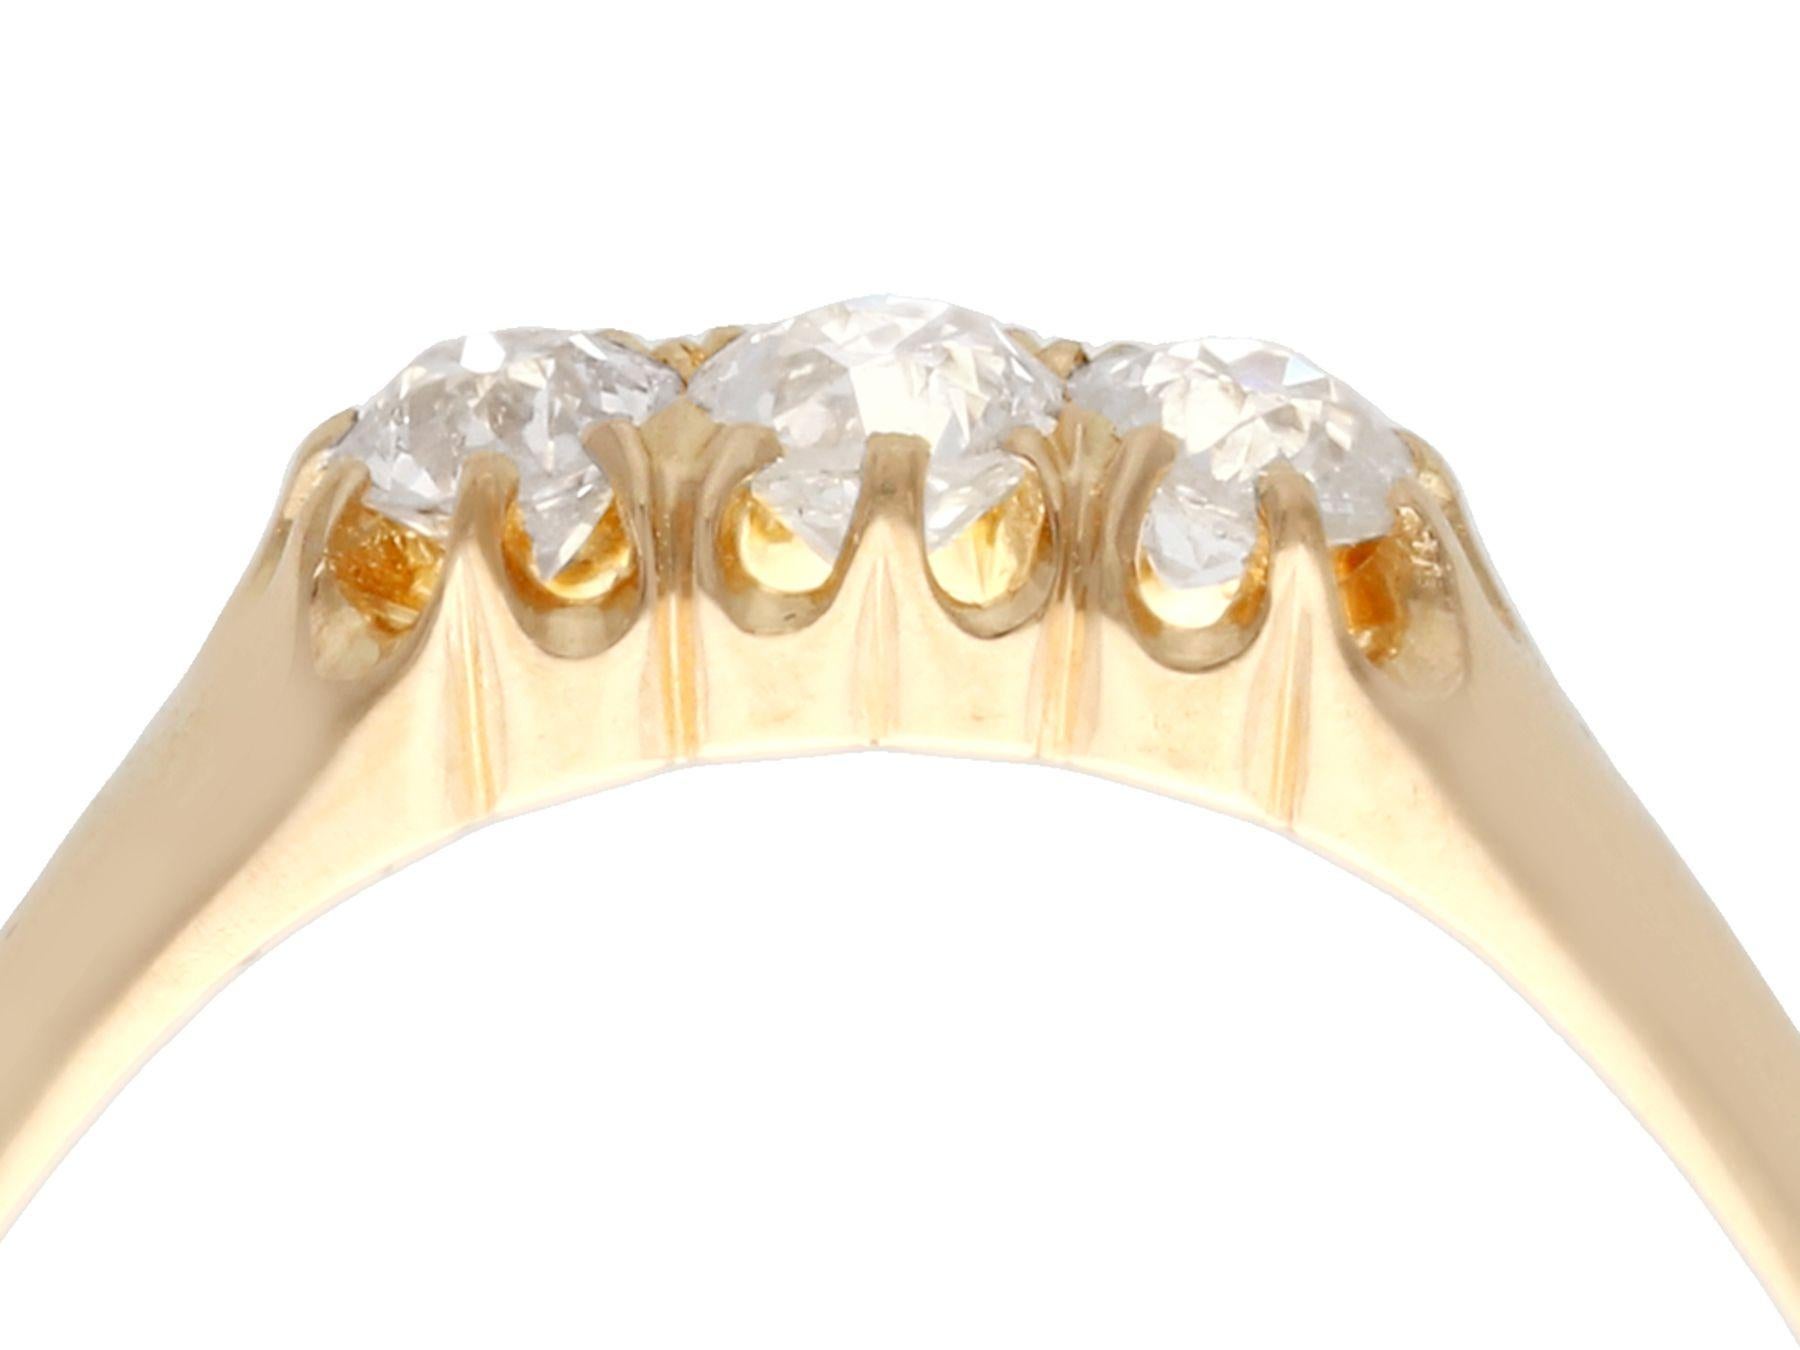 Eine feine und beeindruckende antike schwedische 0,55 Karat Diamant, 18 Karat Gelbgold Trilogie Ring; Teil unserer antiken Schmuck und Estate Jewelry Sammlungen.

Dieser beeindruckende antike schwedische Trilogie-Ring ist aus 18 Karat Gelbgold